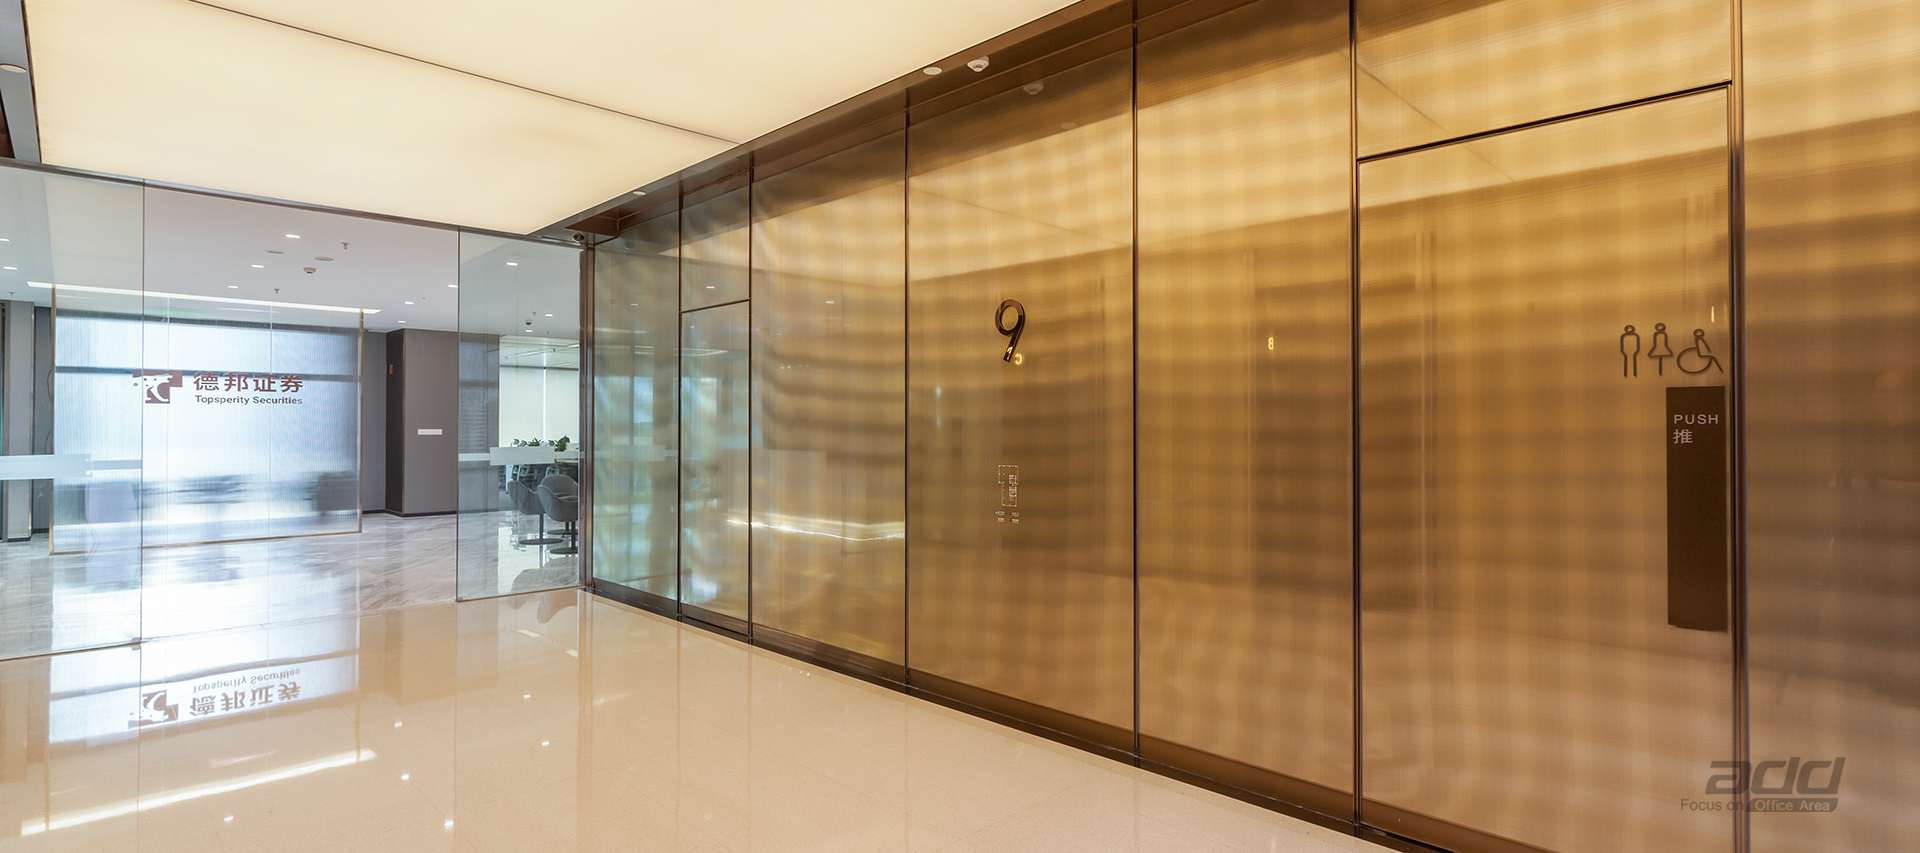 德邦證券辦公樓裝修設計-電梯廳-pc